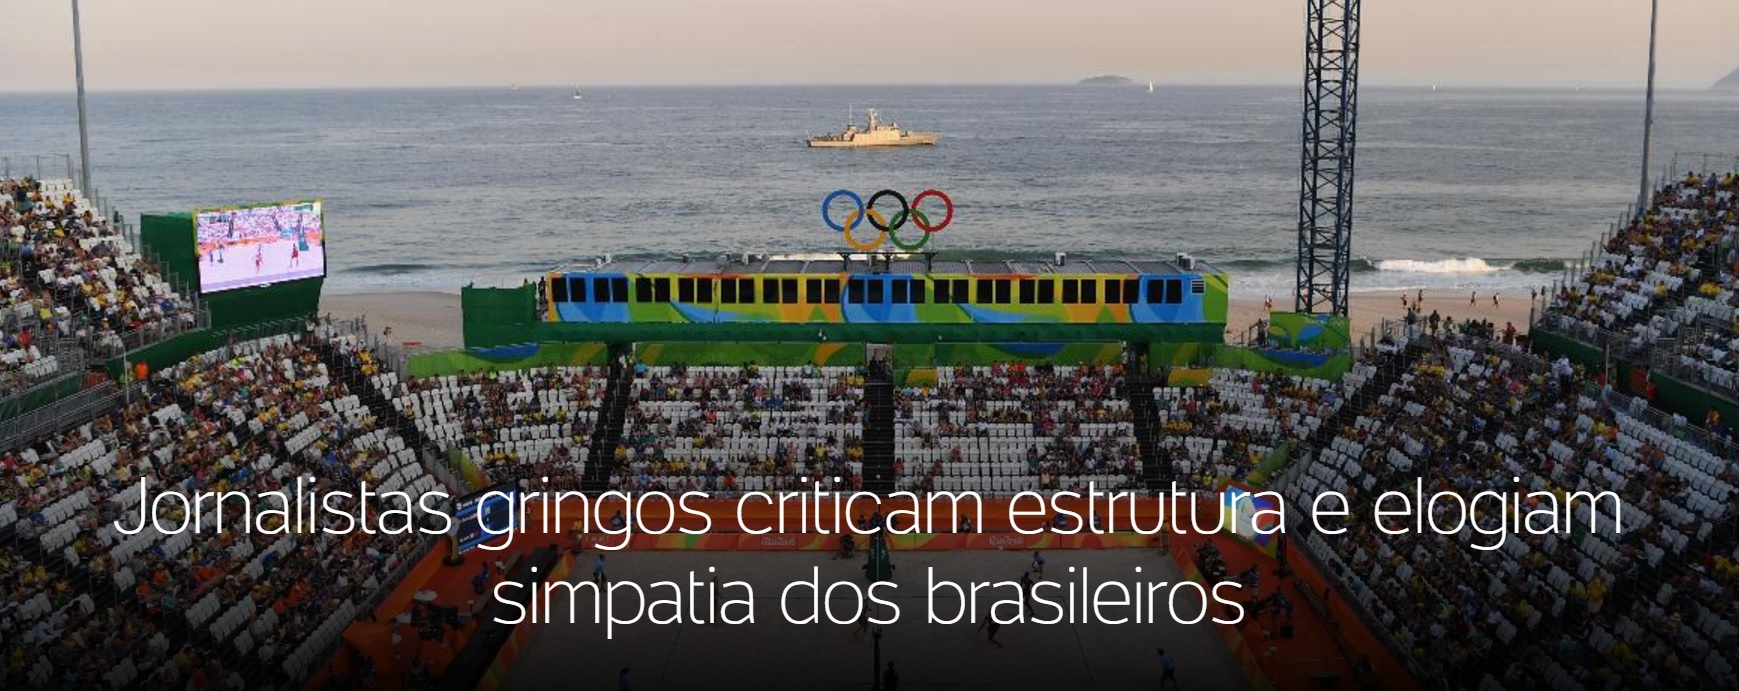 Jornalistas estrangeiros reclamam de problemas de organização na Olimpíada